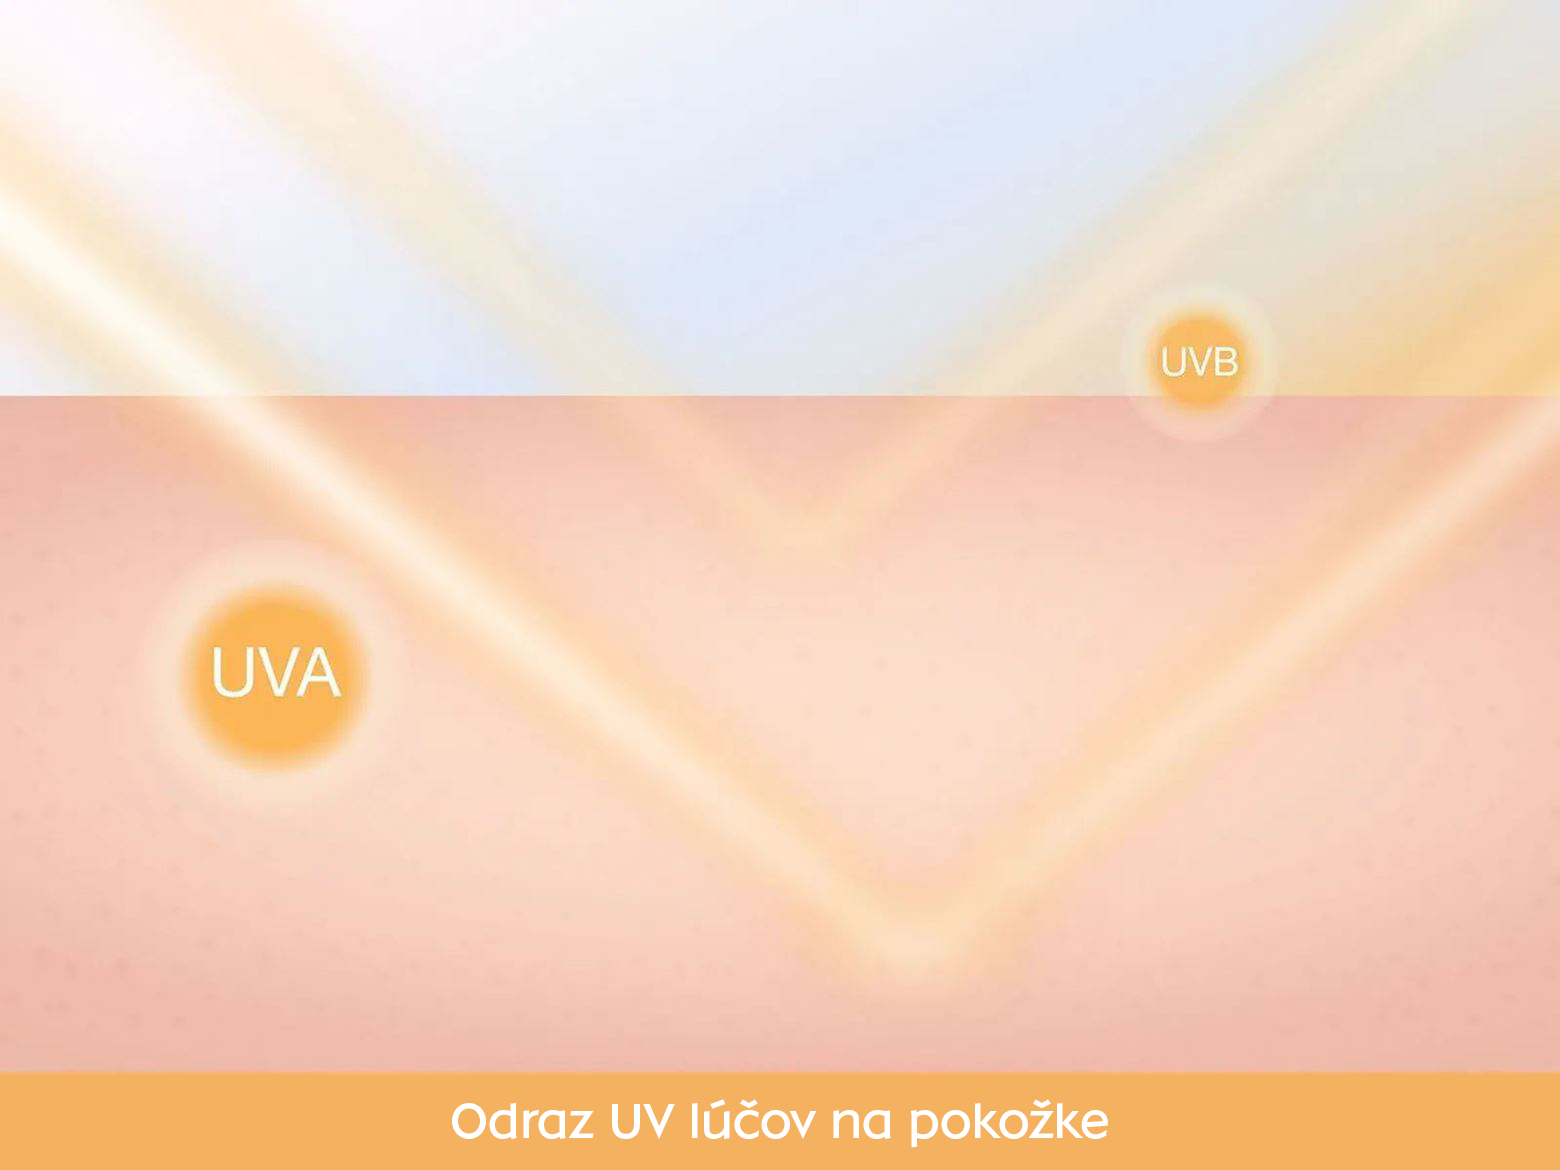 Odraz UV lúčov od pokožky